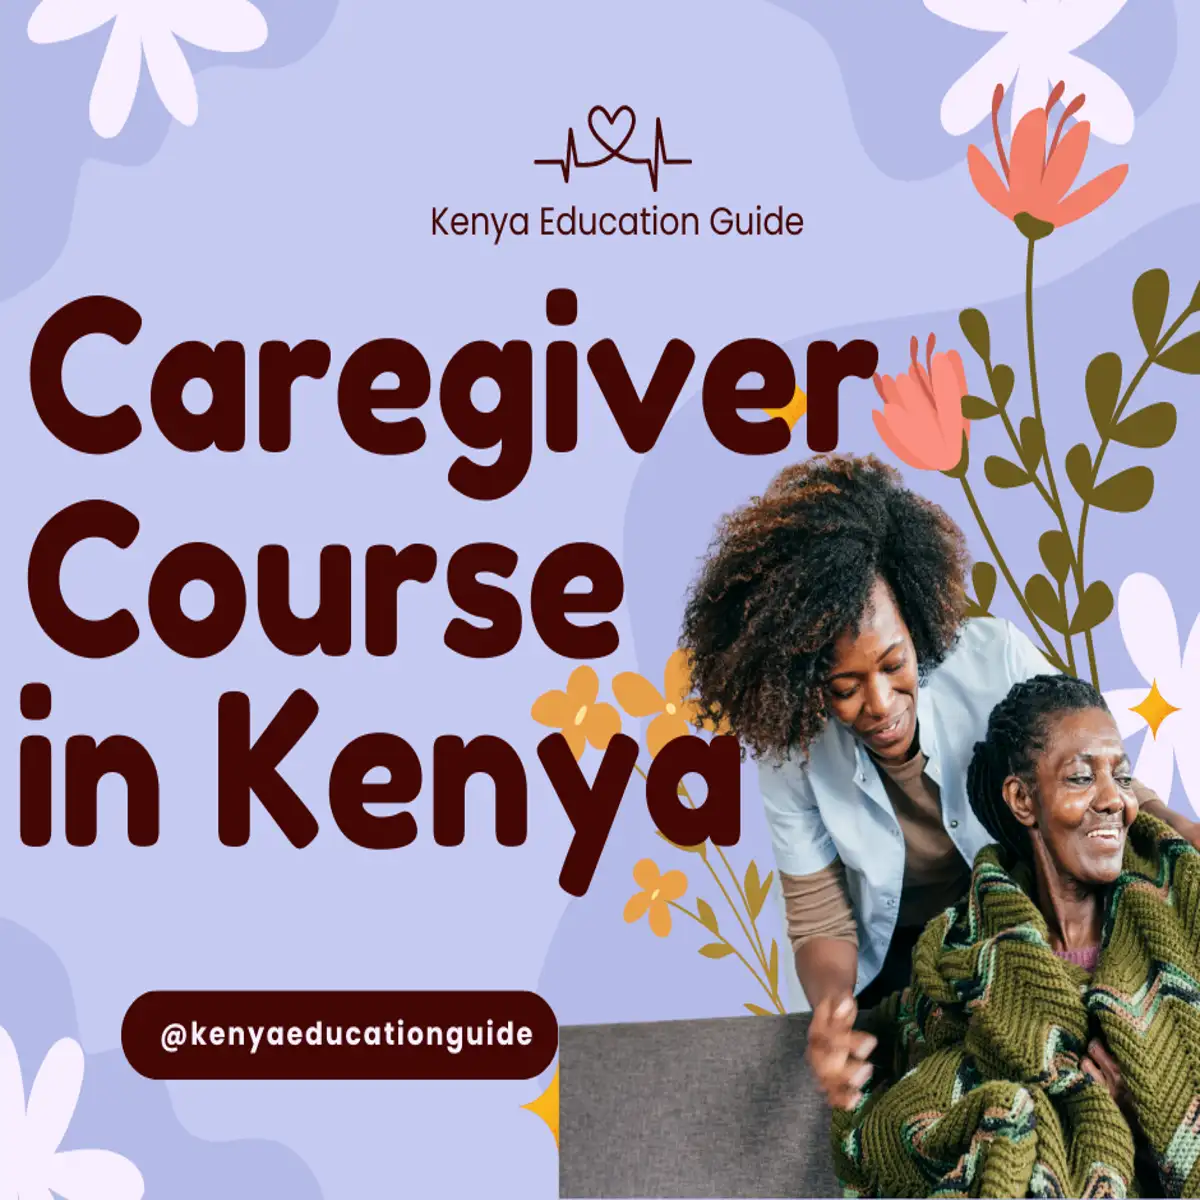 Caregiver course in Kenya